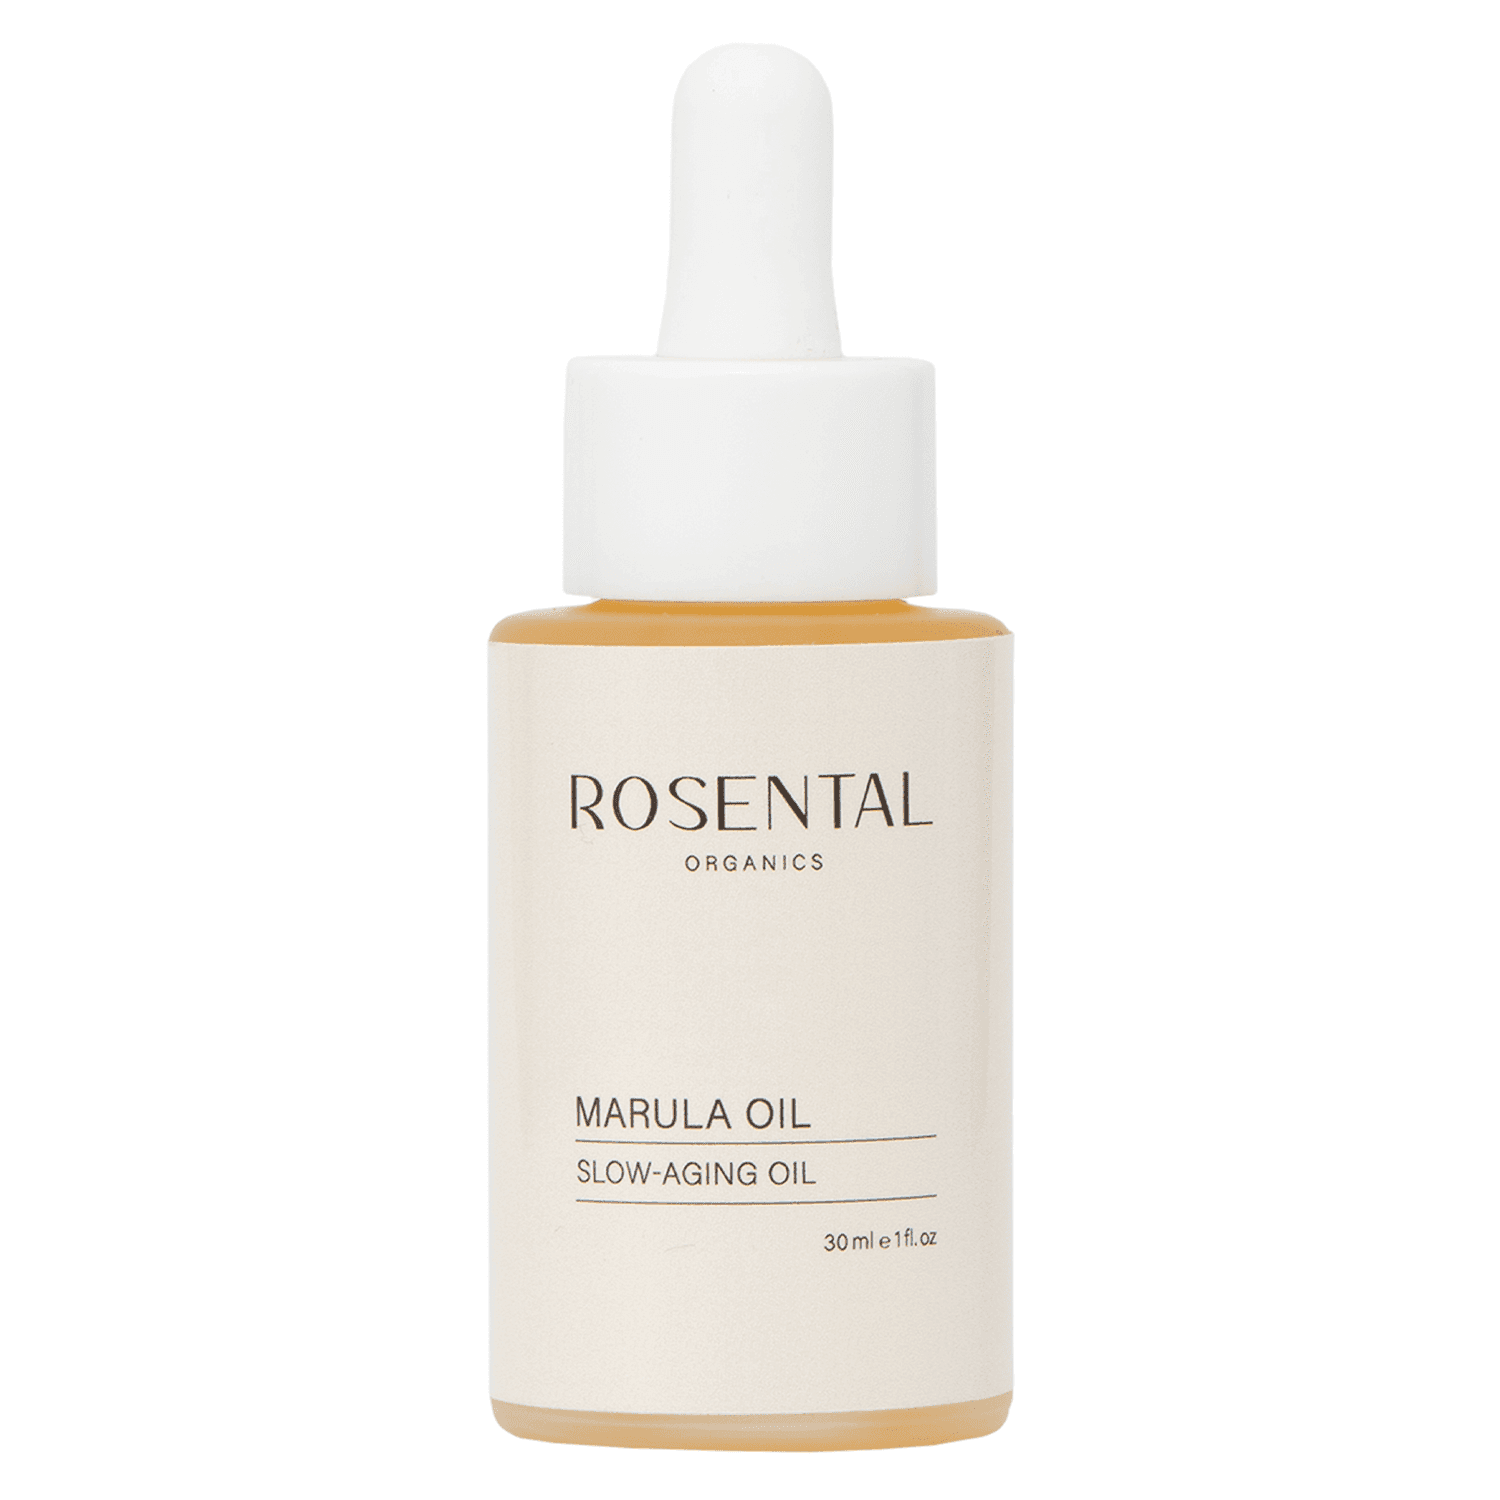 Rosental Face Care - Marula Oil